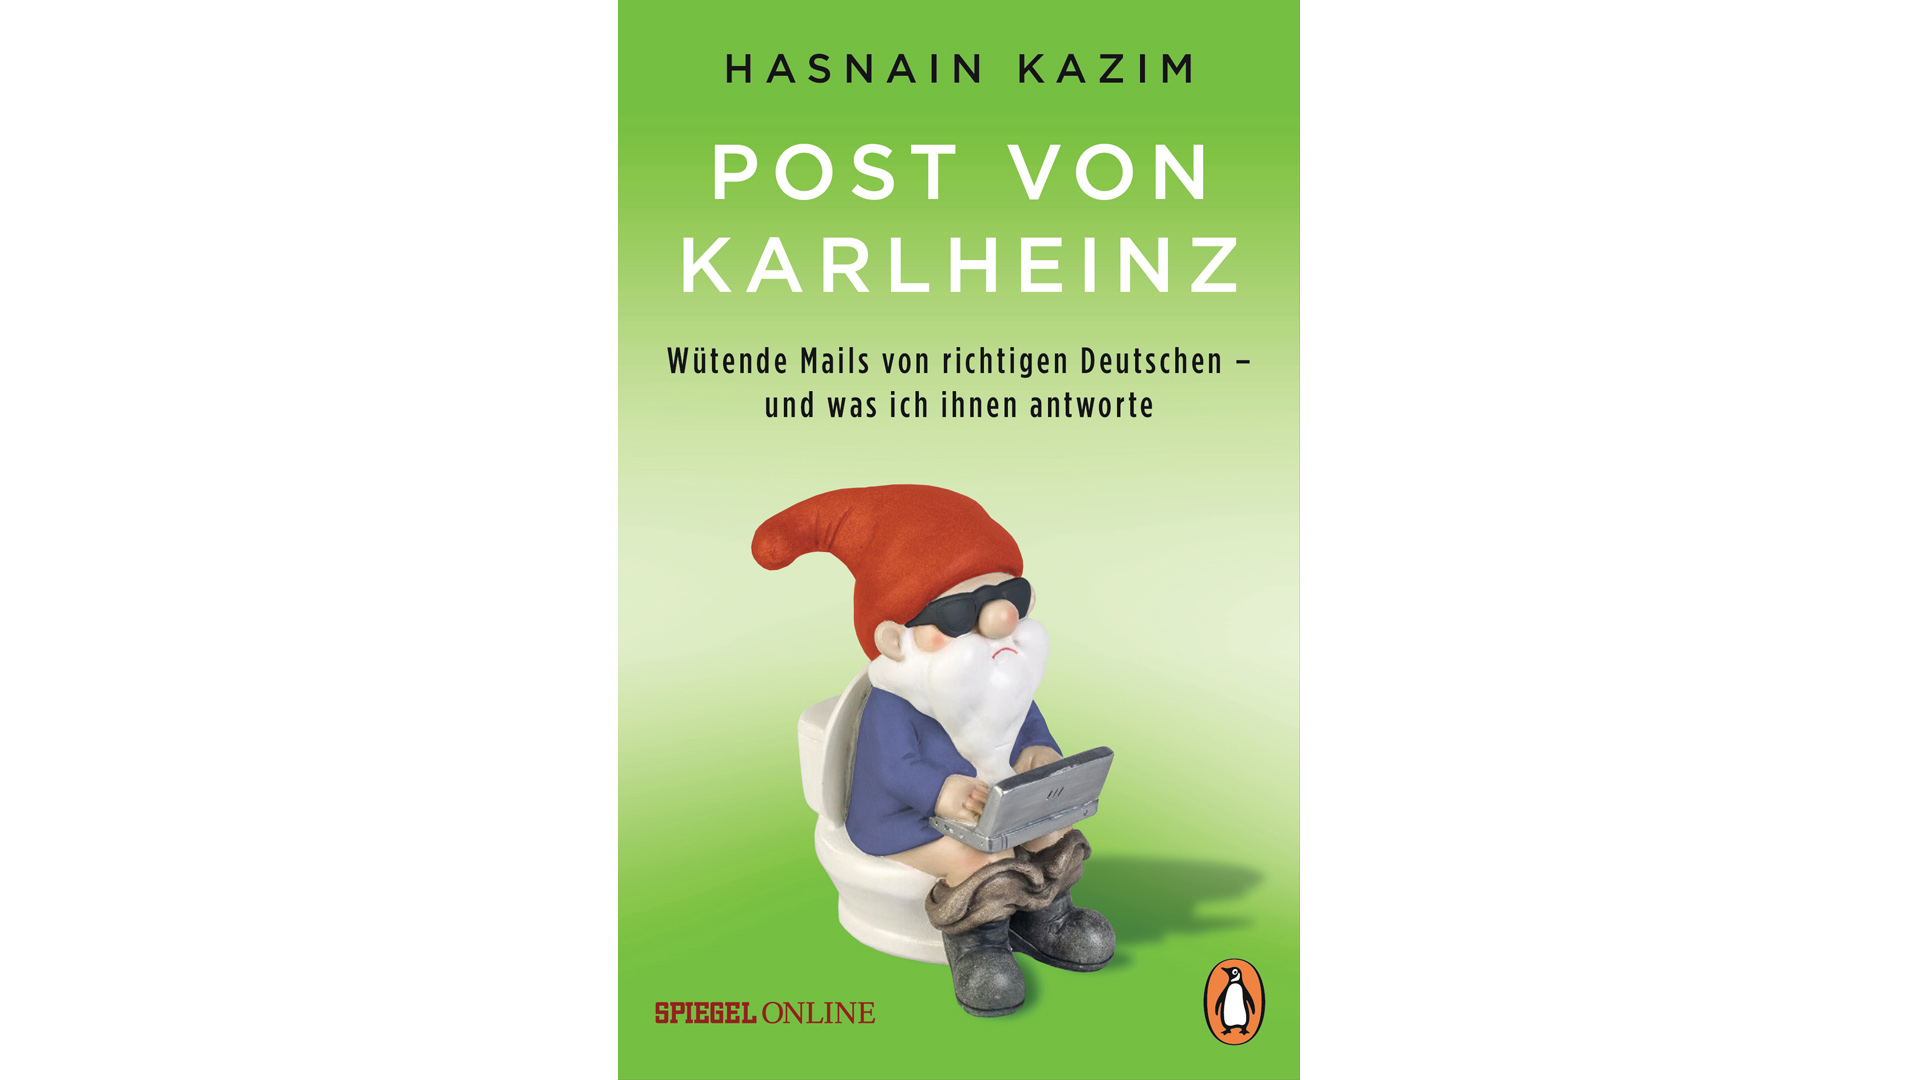 Zwei Jahre lang hat Hasnain Kazim, in Deutschland geborener Sohn indisch-pakistanischer Eltern, zurückgemailt, wenn Leser ihm beleidigende und hasserfüllte Post schickten. Nachzulesen ist diese Korrespondenz im eben erschienenen Buch „Post von Karlheinz. Wütende Mails von richtigen Deutschen – und was ich ihnen antworte“, Penguin, 272 Seiten, 10 Euro, ISBN 9783328102724